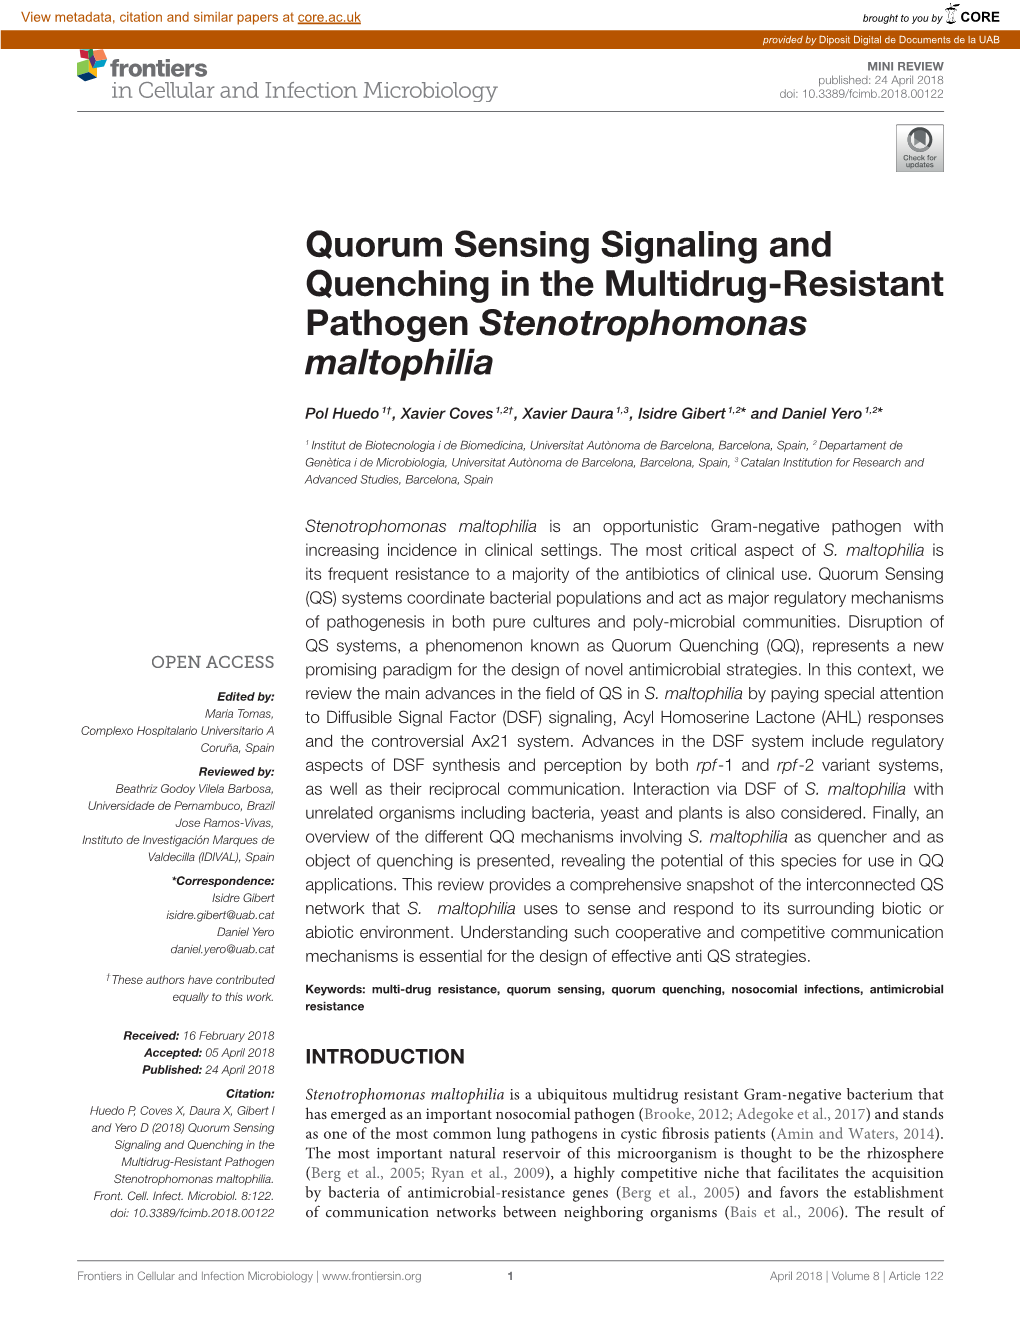 Quorum Sensing Signaling and Quenching in the Multidrug-Resistant Pathogen Stenotrophomonas Maltophilia